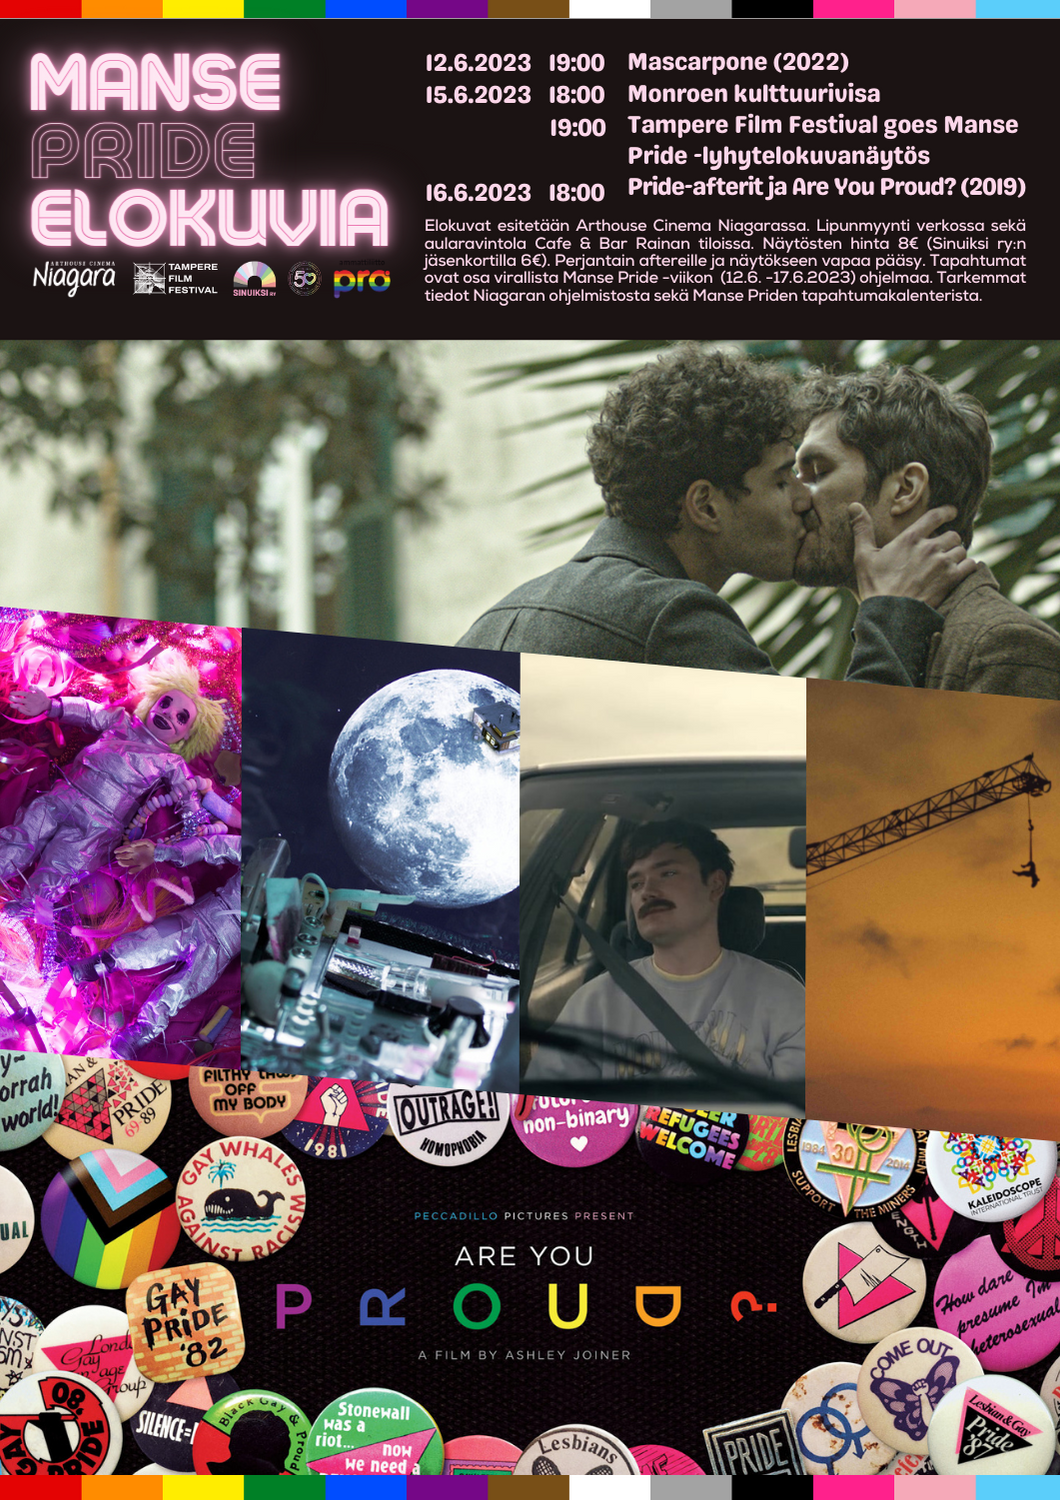 Manse Pride -elokuvien juliste jossa näytösten tietoja ja kuvia elokuvista.